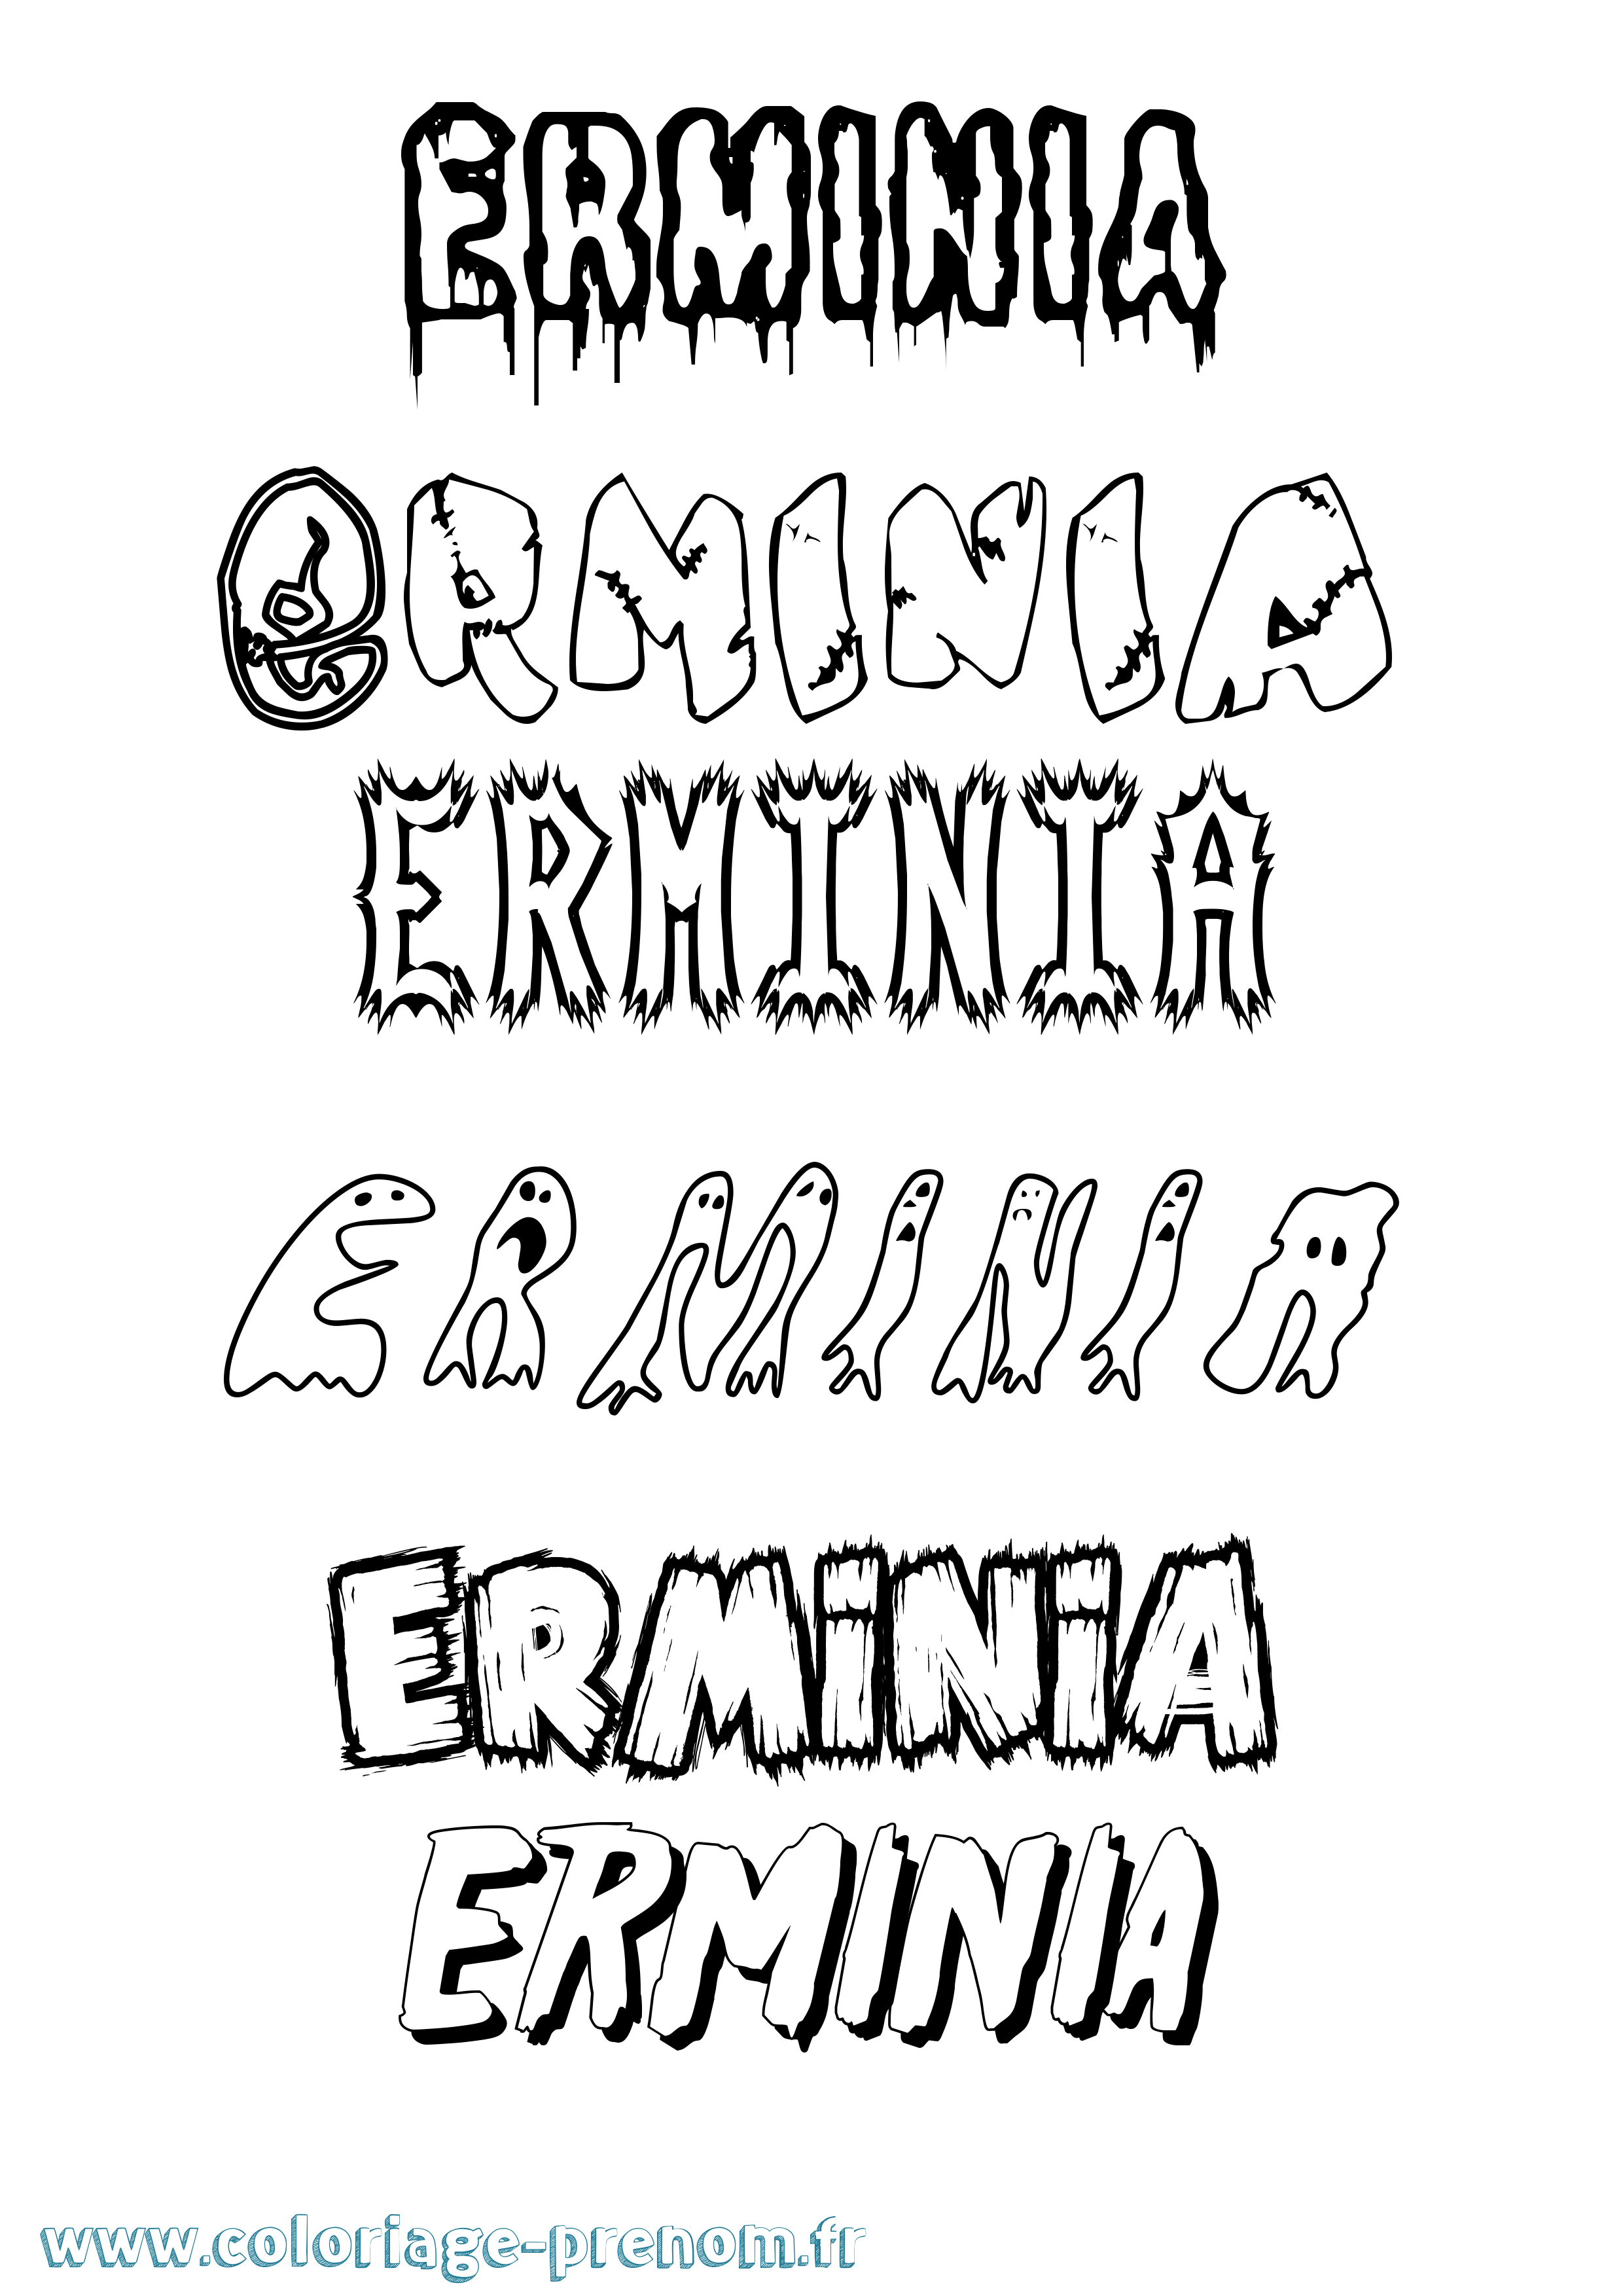 Coloriage prénom Erminia Frisson